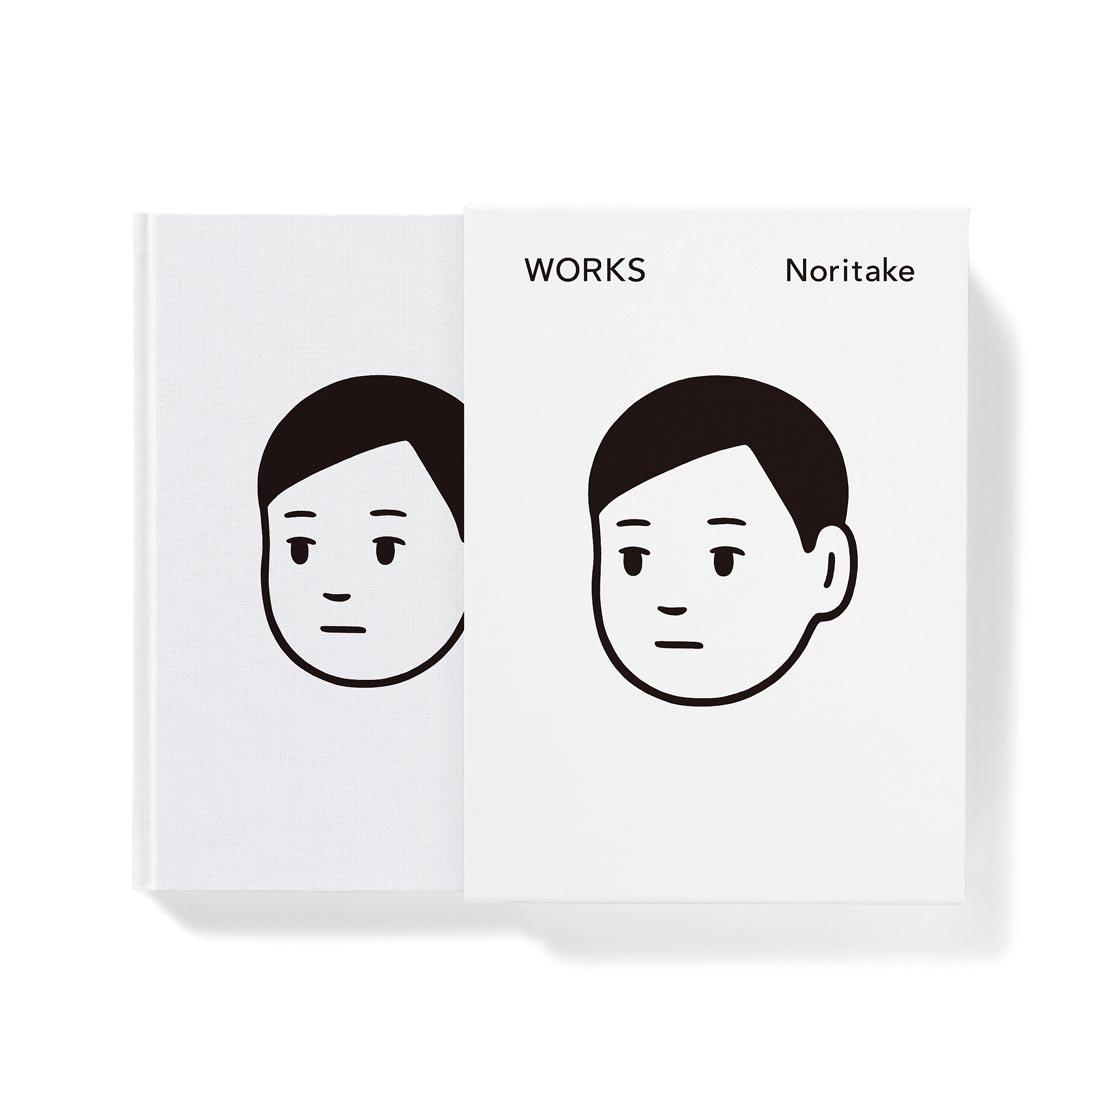 作品集『WORKS special edtion』（Noritake発行）8,800円（以下、すべて税込）。初版500部限定のスペシャルエディションを先行販売している。ハードカバー函入り。Noritakeサイン入り。